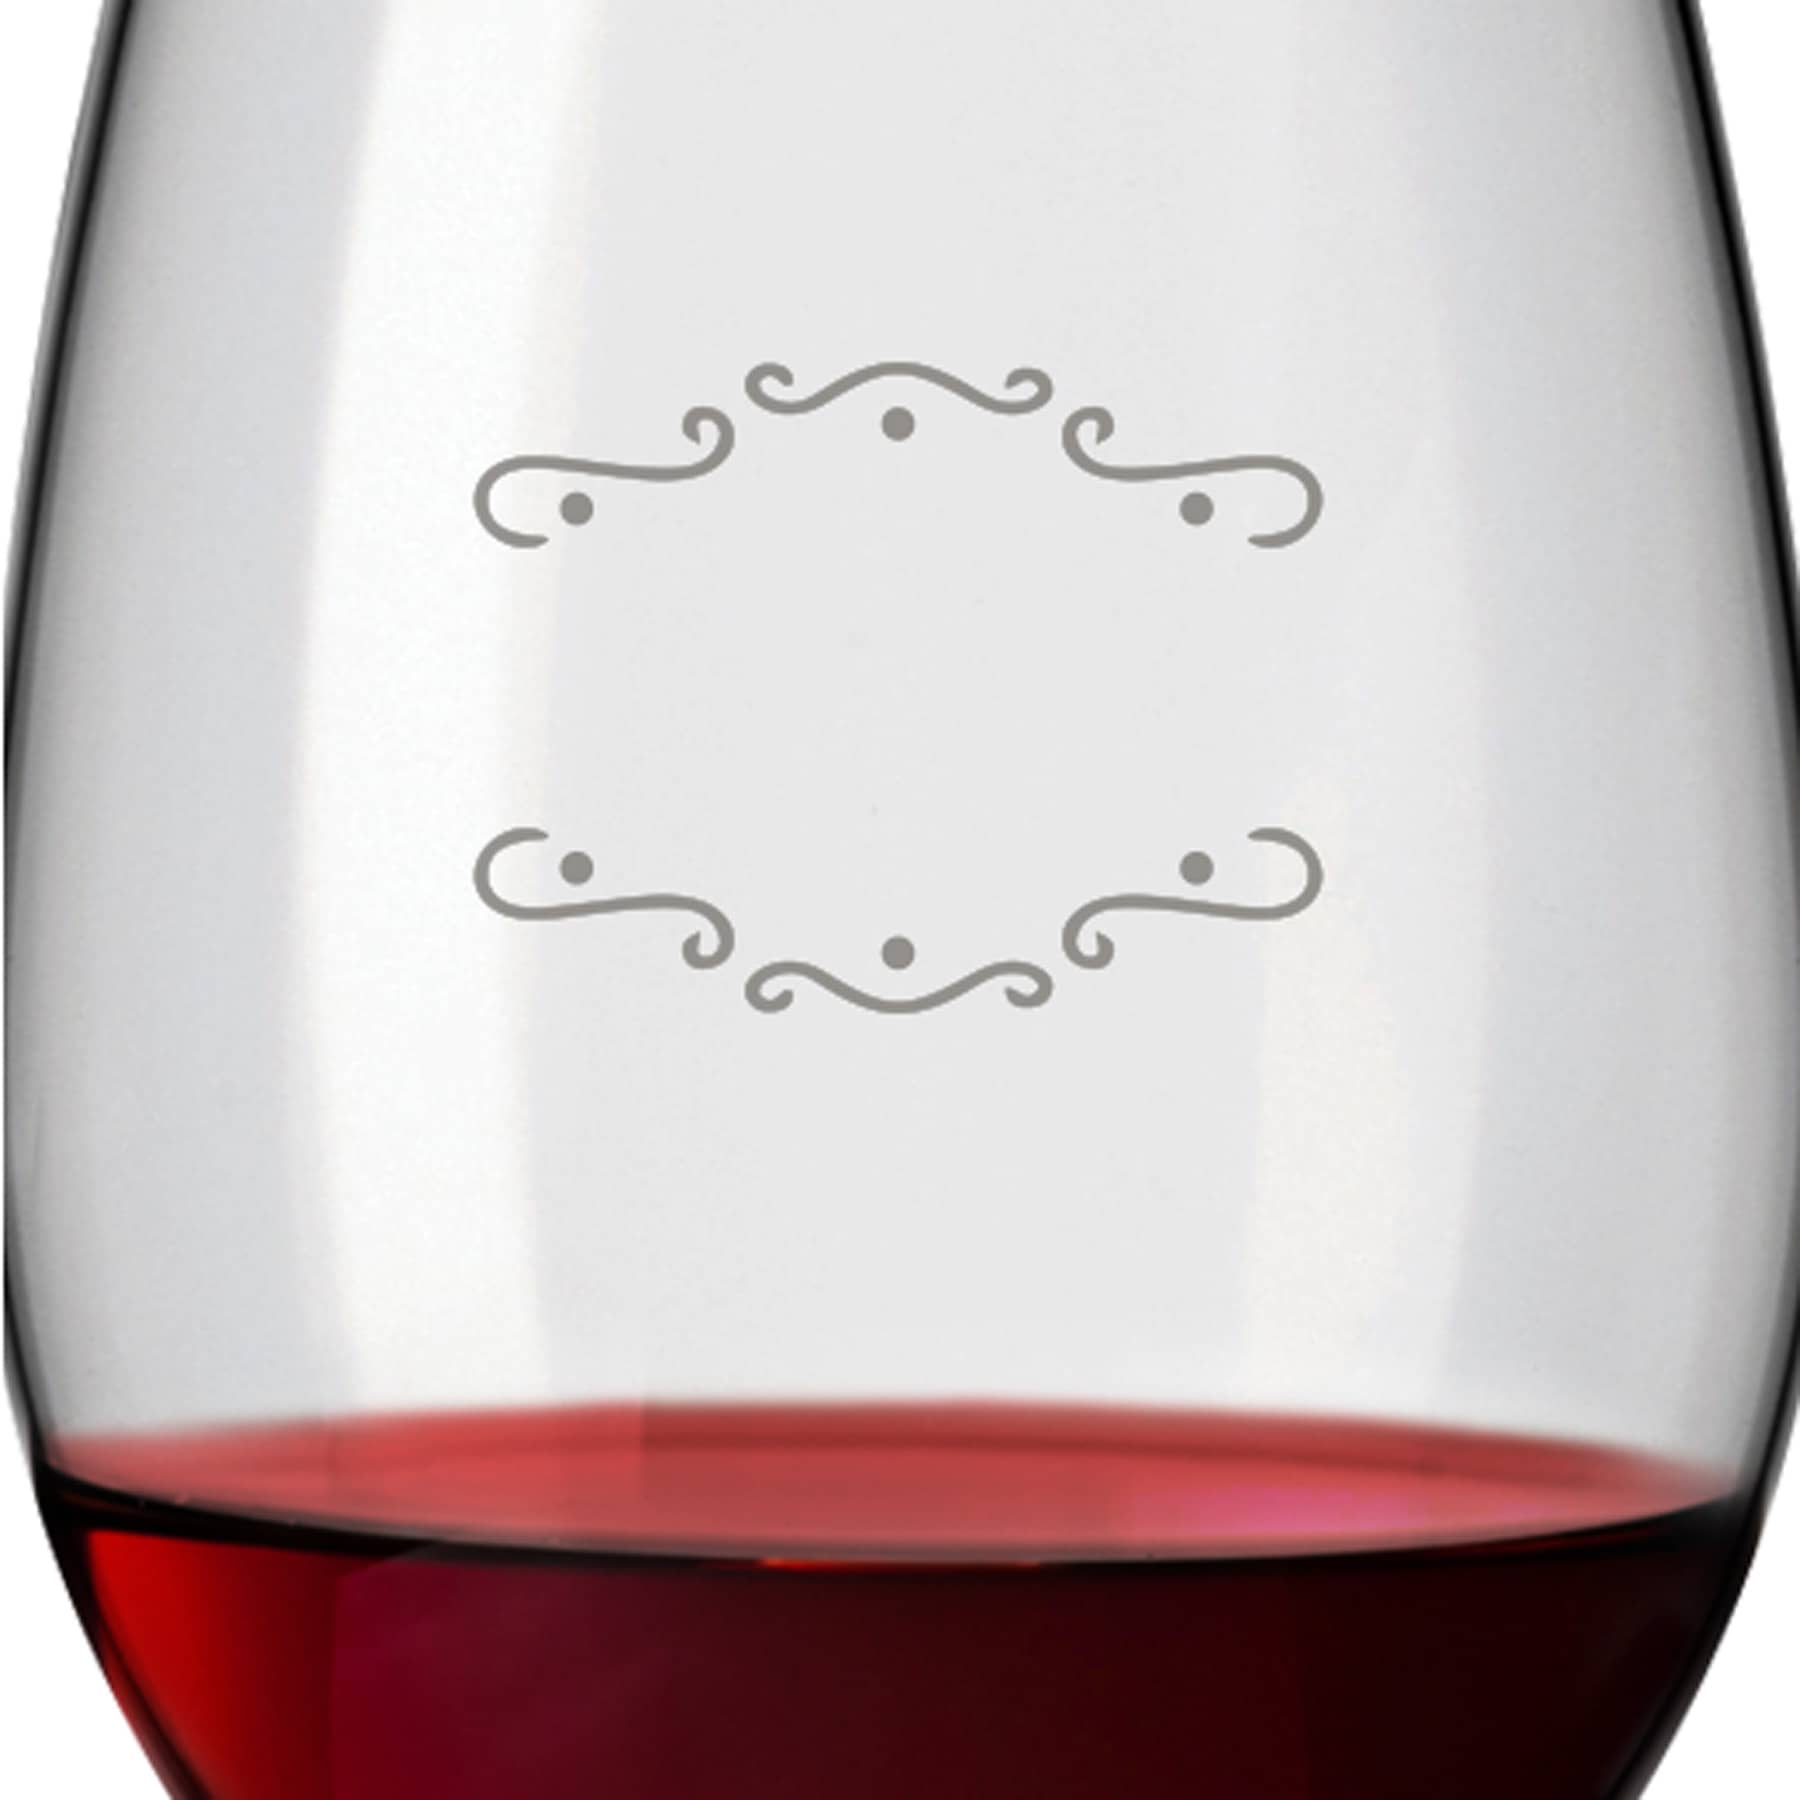 2x Leonardo Bordeauxglas Rotweinglas XL mit Namen oder Wunschtext graviert, 640ml, DAILY, personalisiertes Premium Bordeauxglas in Gastroqualität (Verzierung 02)